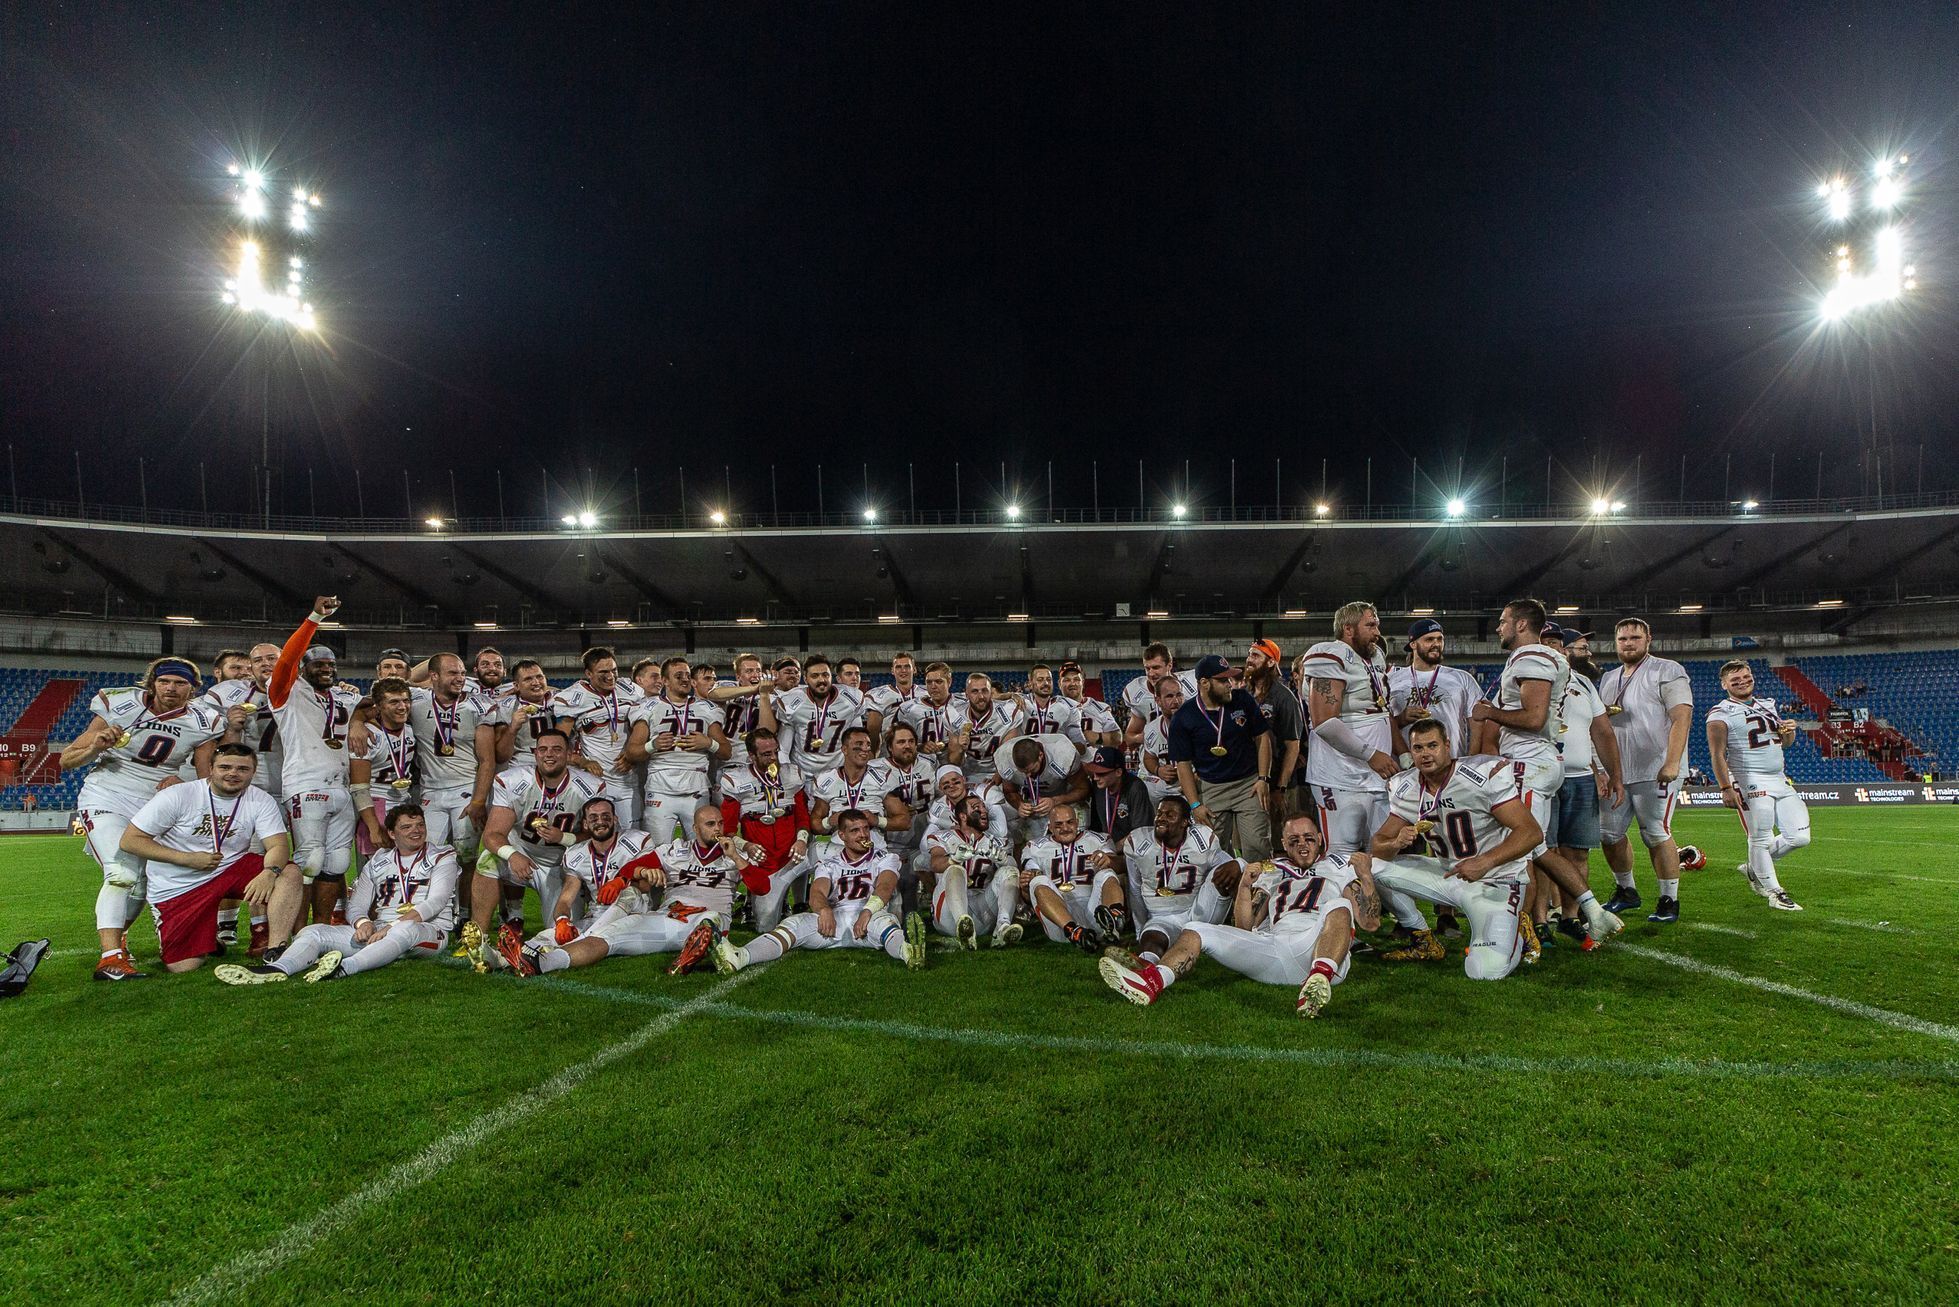 Czech Bowl 2019, Prague Lions - Ostrava Steelers